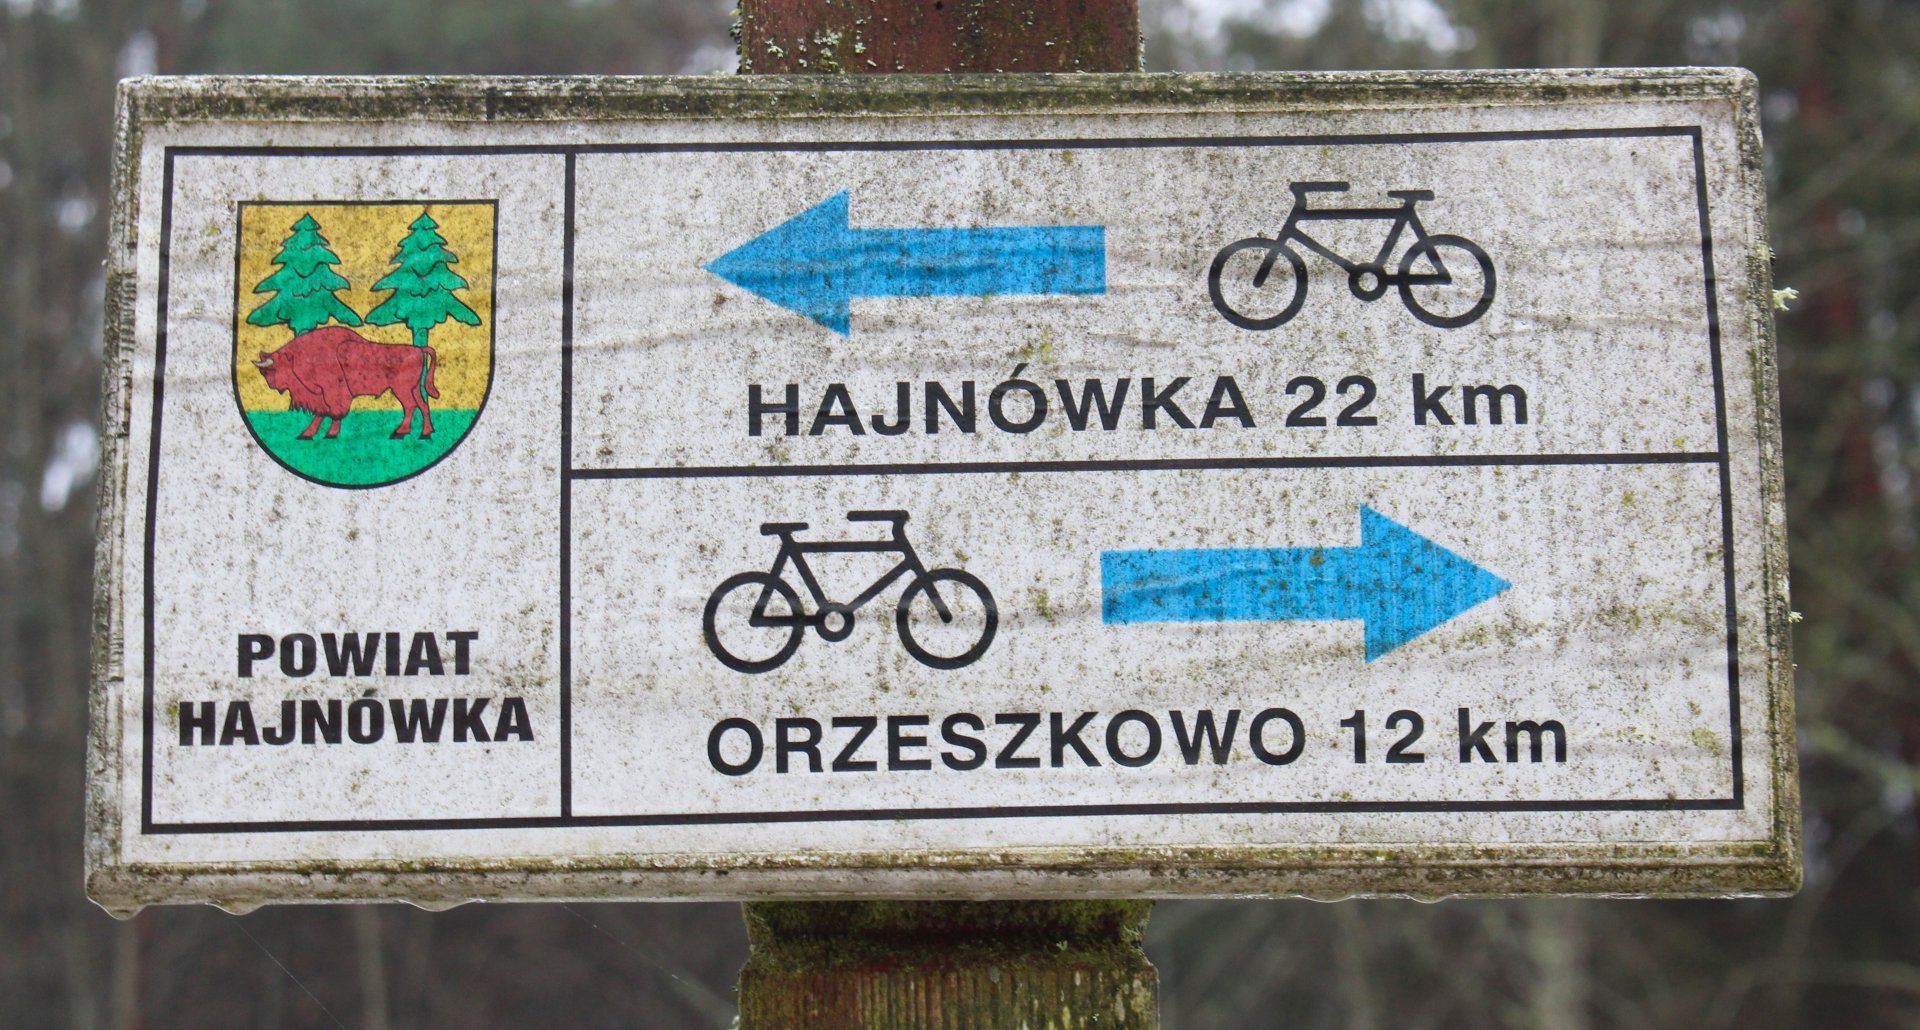 Bicycle rental in Enklawa